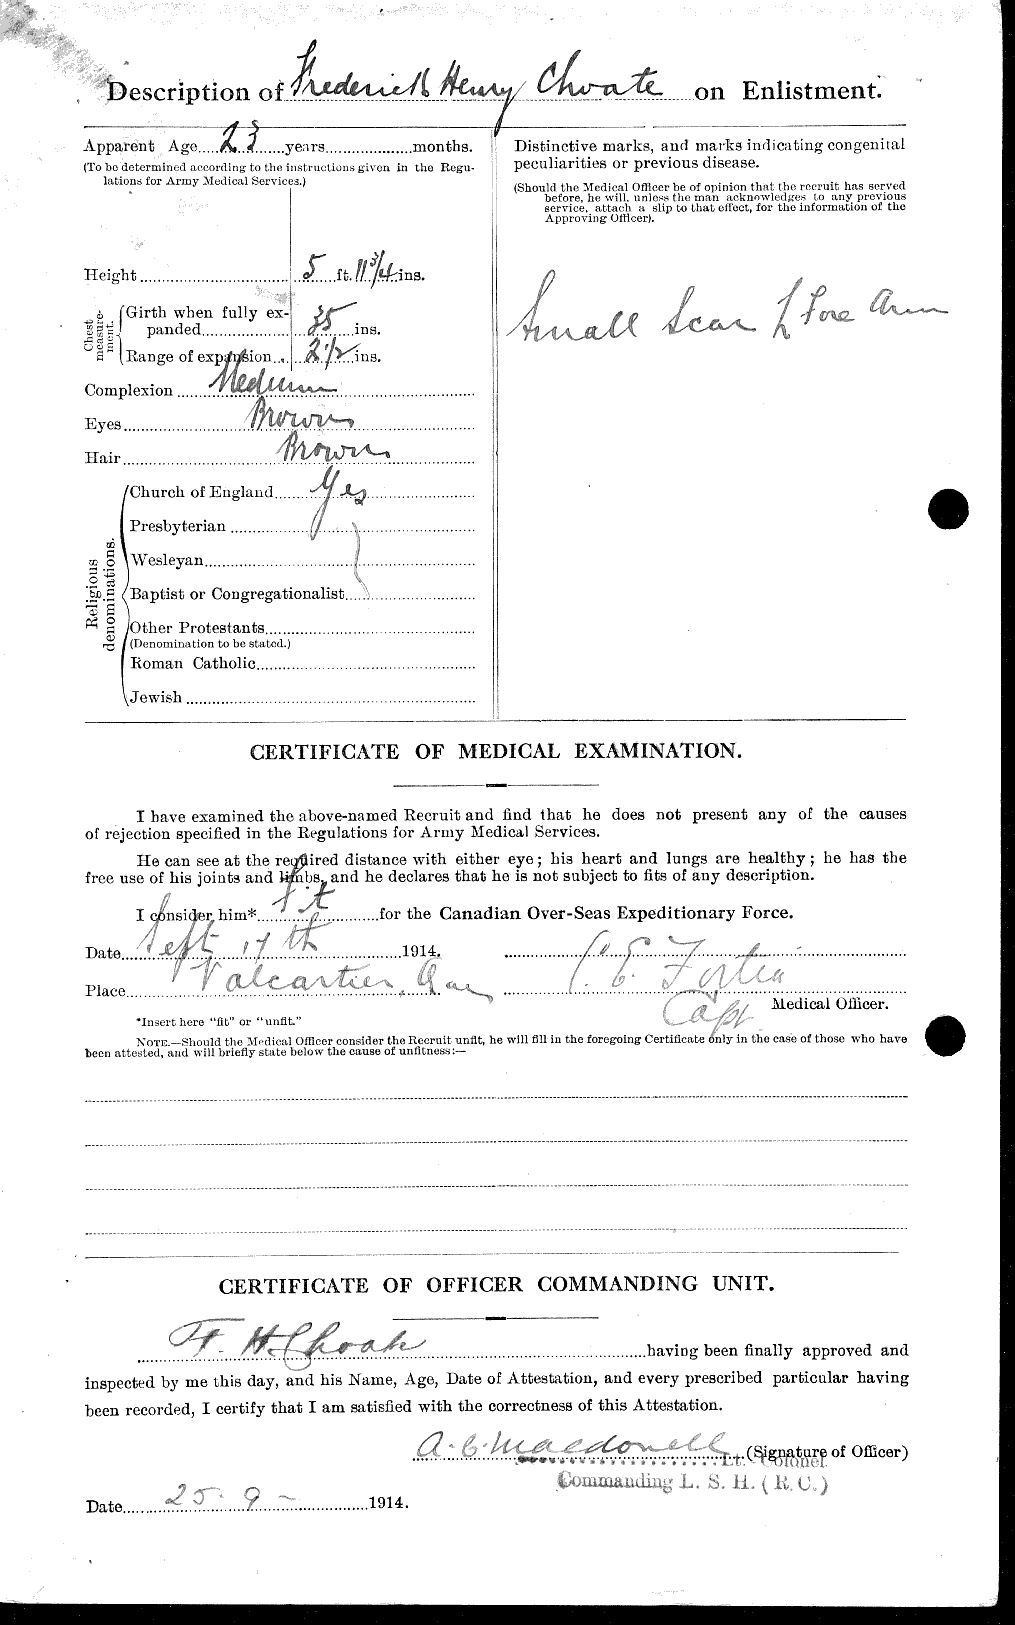 Dossiers du Personnel de la Première Guerre mondiale - CEC 018422b